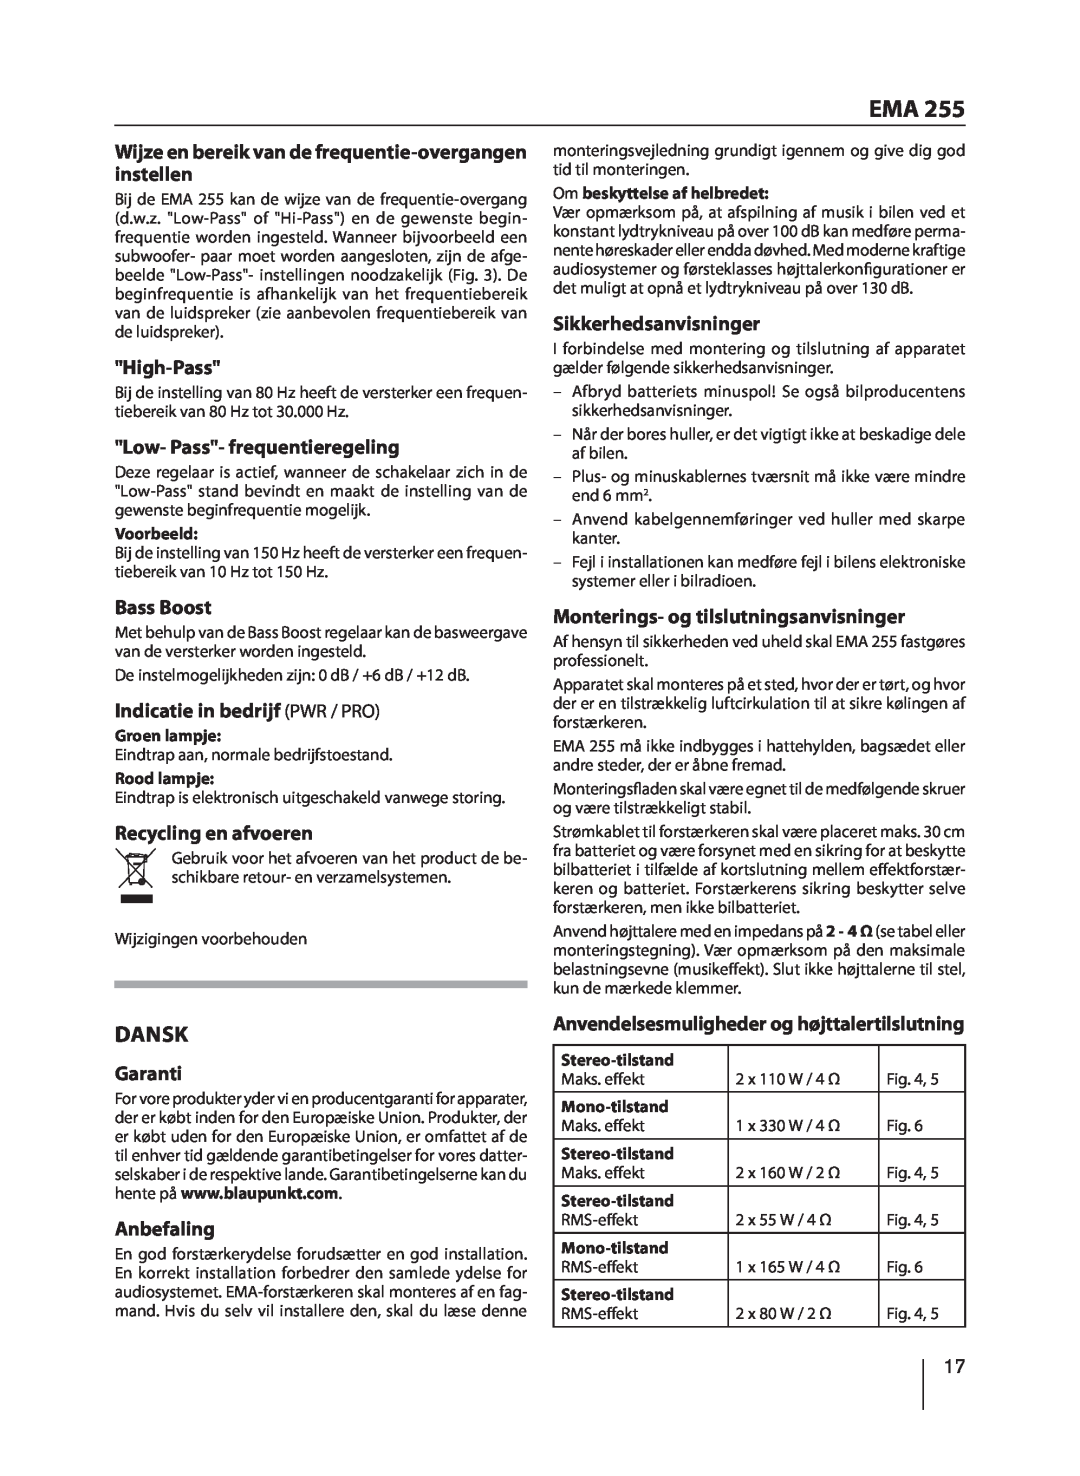 Blaupunkt EMA 255 manual Dansk 